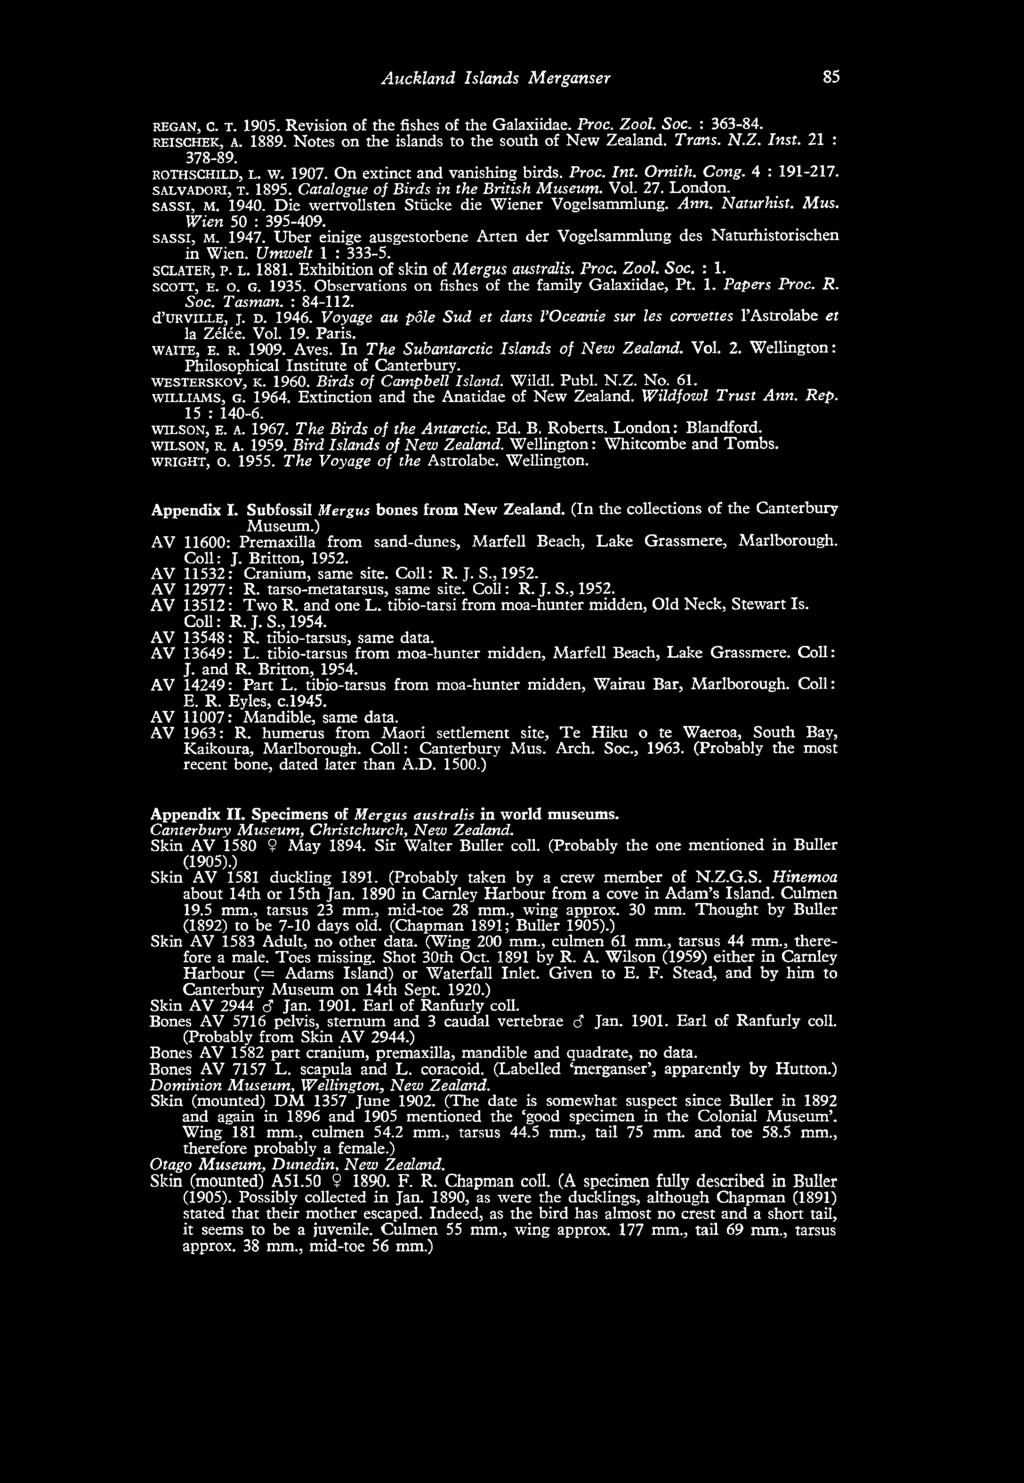 Vol. 27. London. s a s s i, M. 1940. Die wertvollsten Stücke die Wiener Vogelsammlung. Ann. Naturhist. Mus. Wien 50 : 395-409. s a s s i, M. 1947.